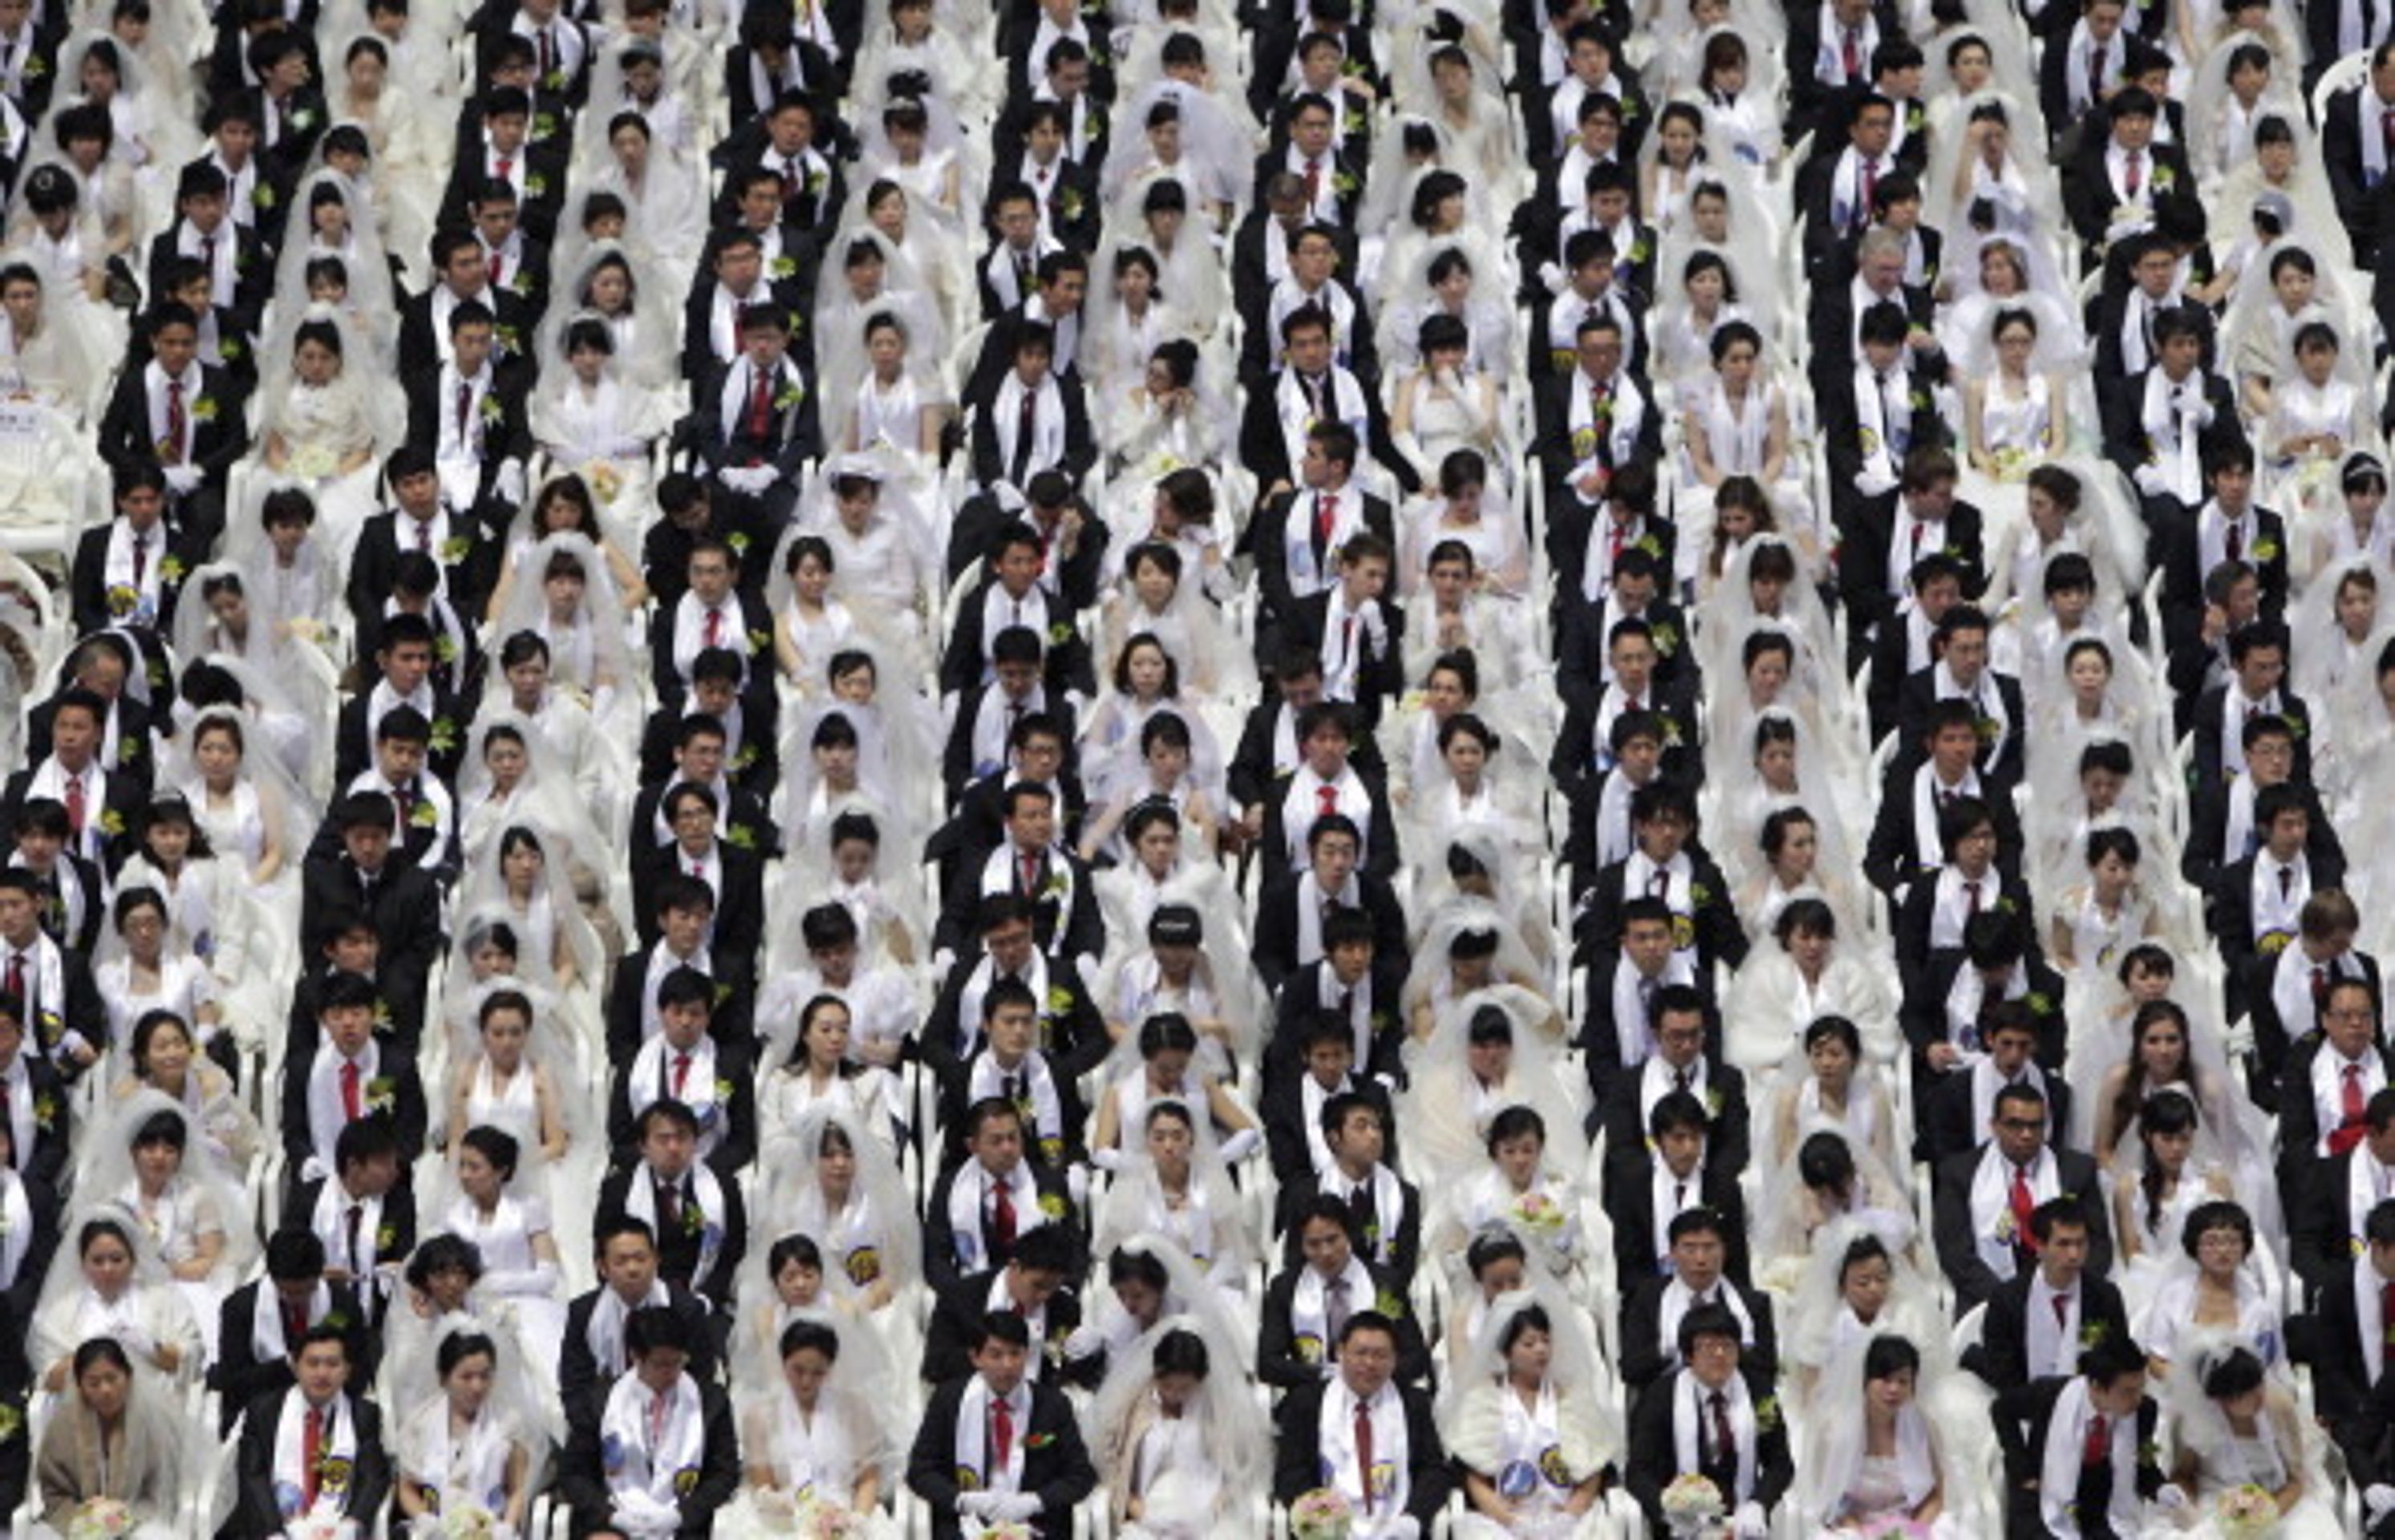 Hromadná svatba v Jižní Koreji - 12 - Svatba ve velkém stylu: Bralo se 3500 párů najednou! (11/12)